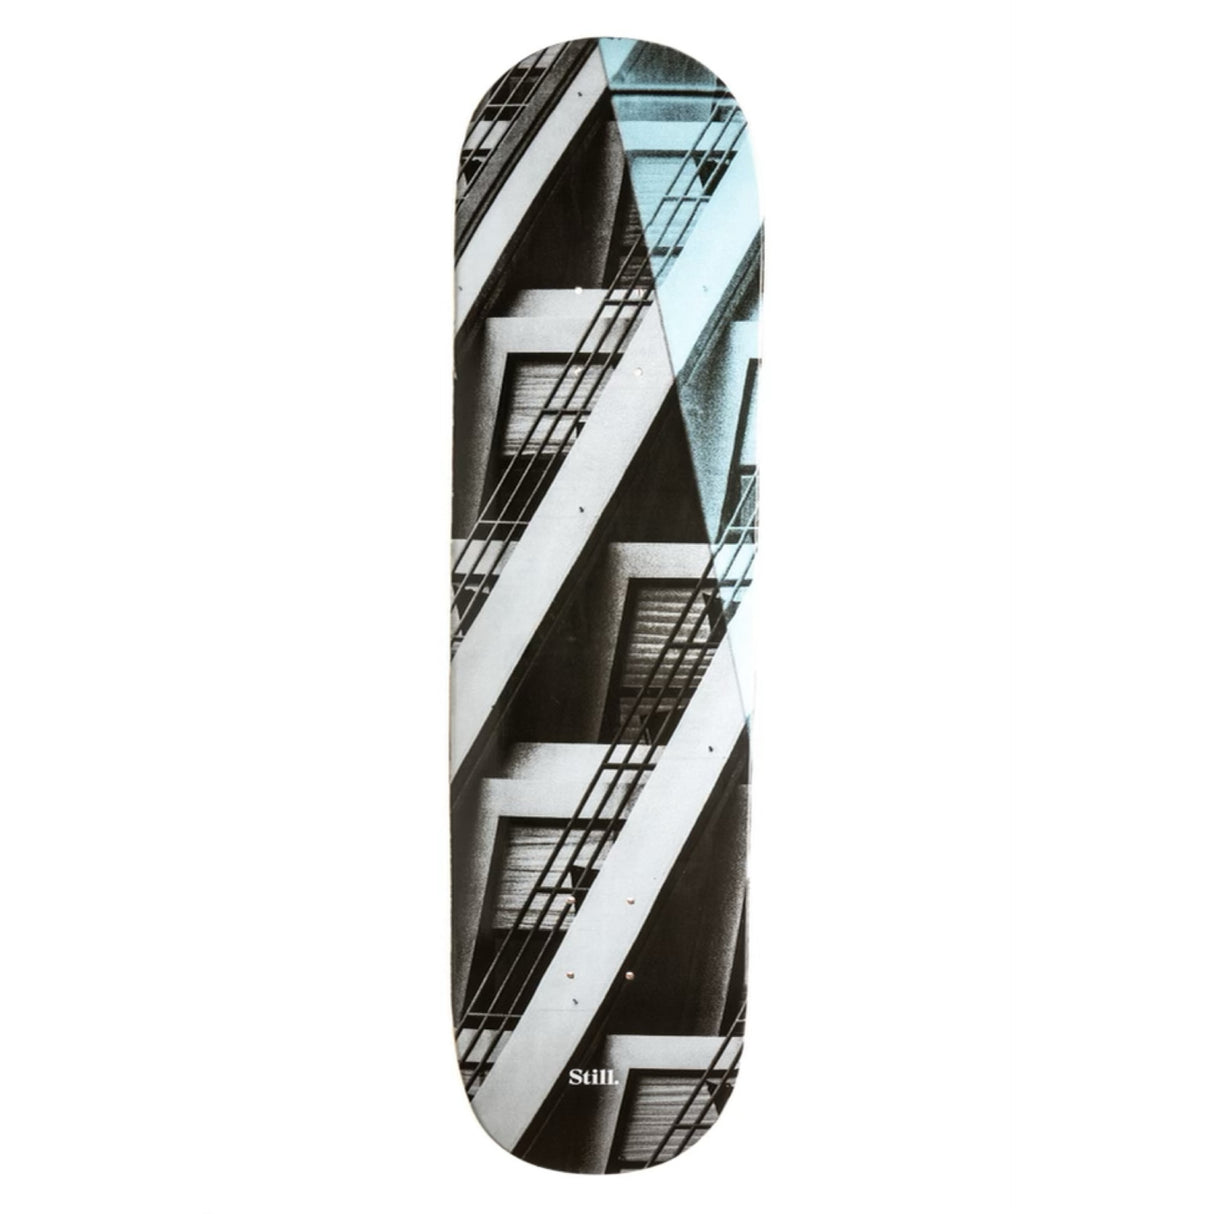 Still Angles 8.25" Skateboard Deck